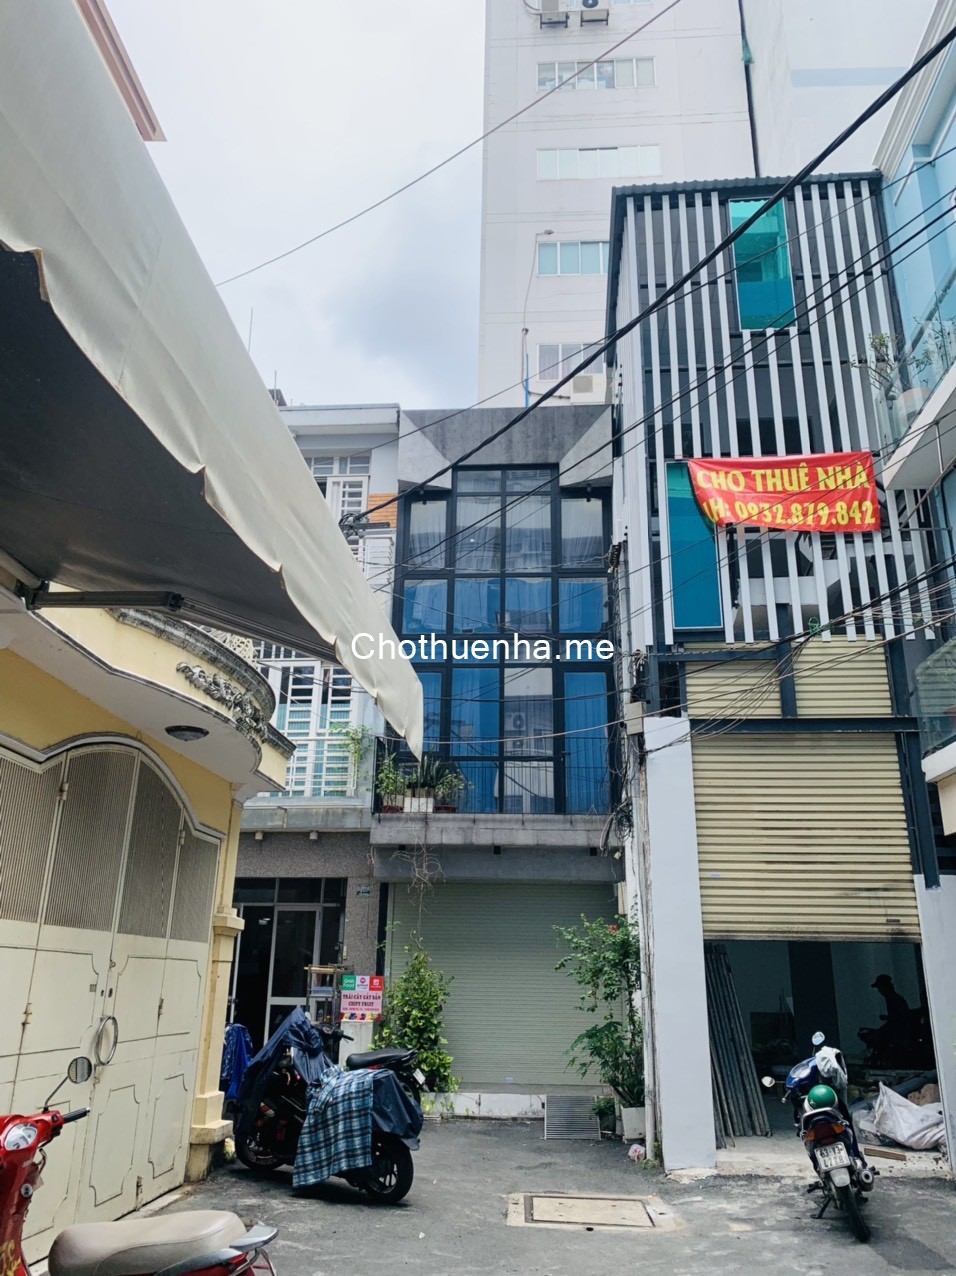 Nhà cho thuê 99 / 103b Võ Văn Tần, p. VTS quận 3 9 x 11 trệt 2 lầu 250 m2 sử dụng